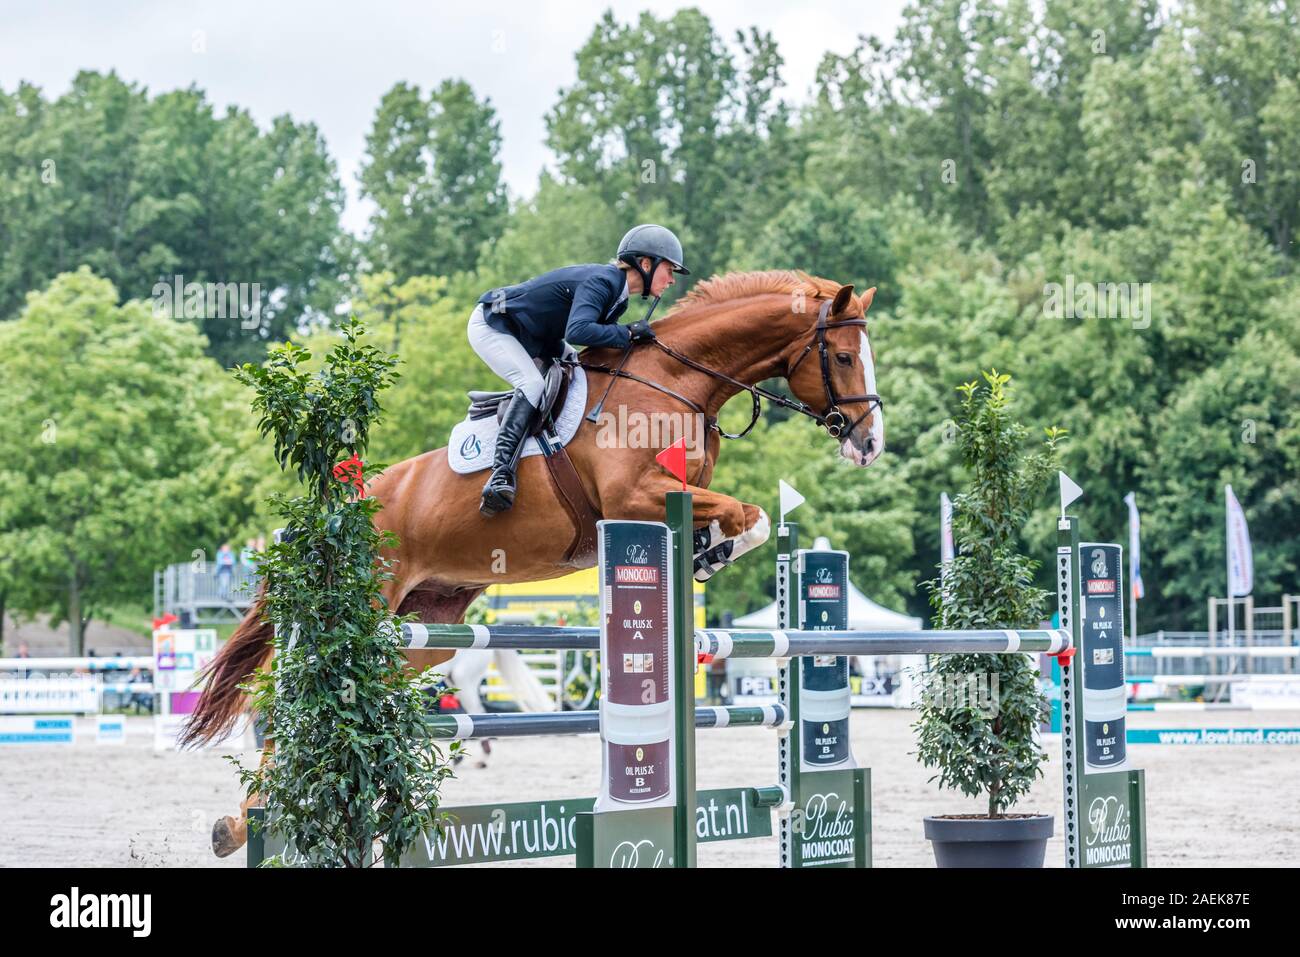 Haarlemmermeer Holland 19 Juni 2019 Concours Hippique Pferd springen Stockfoto